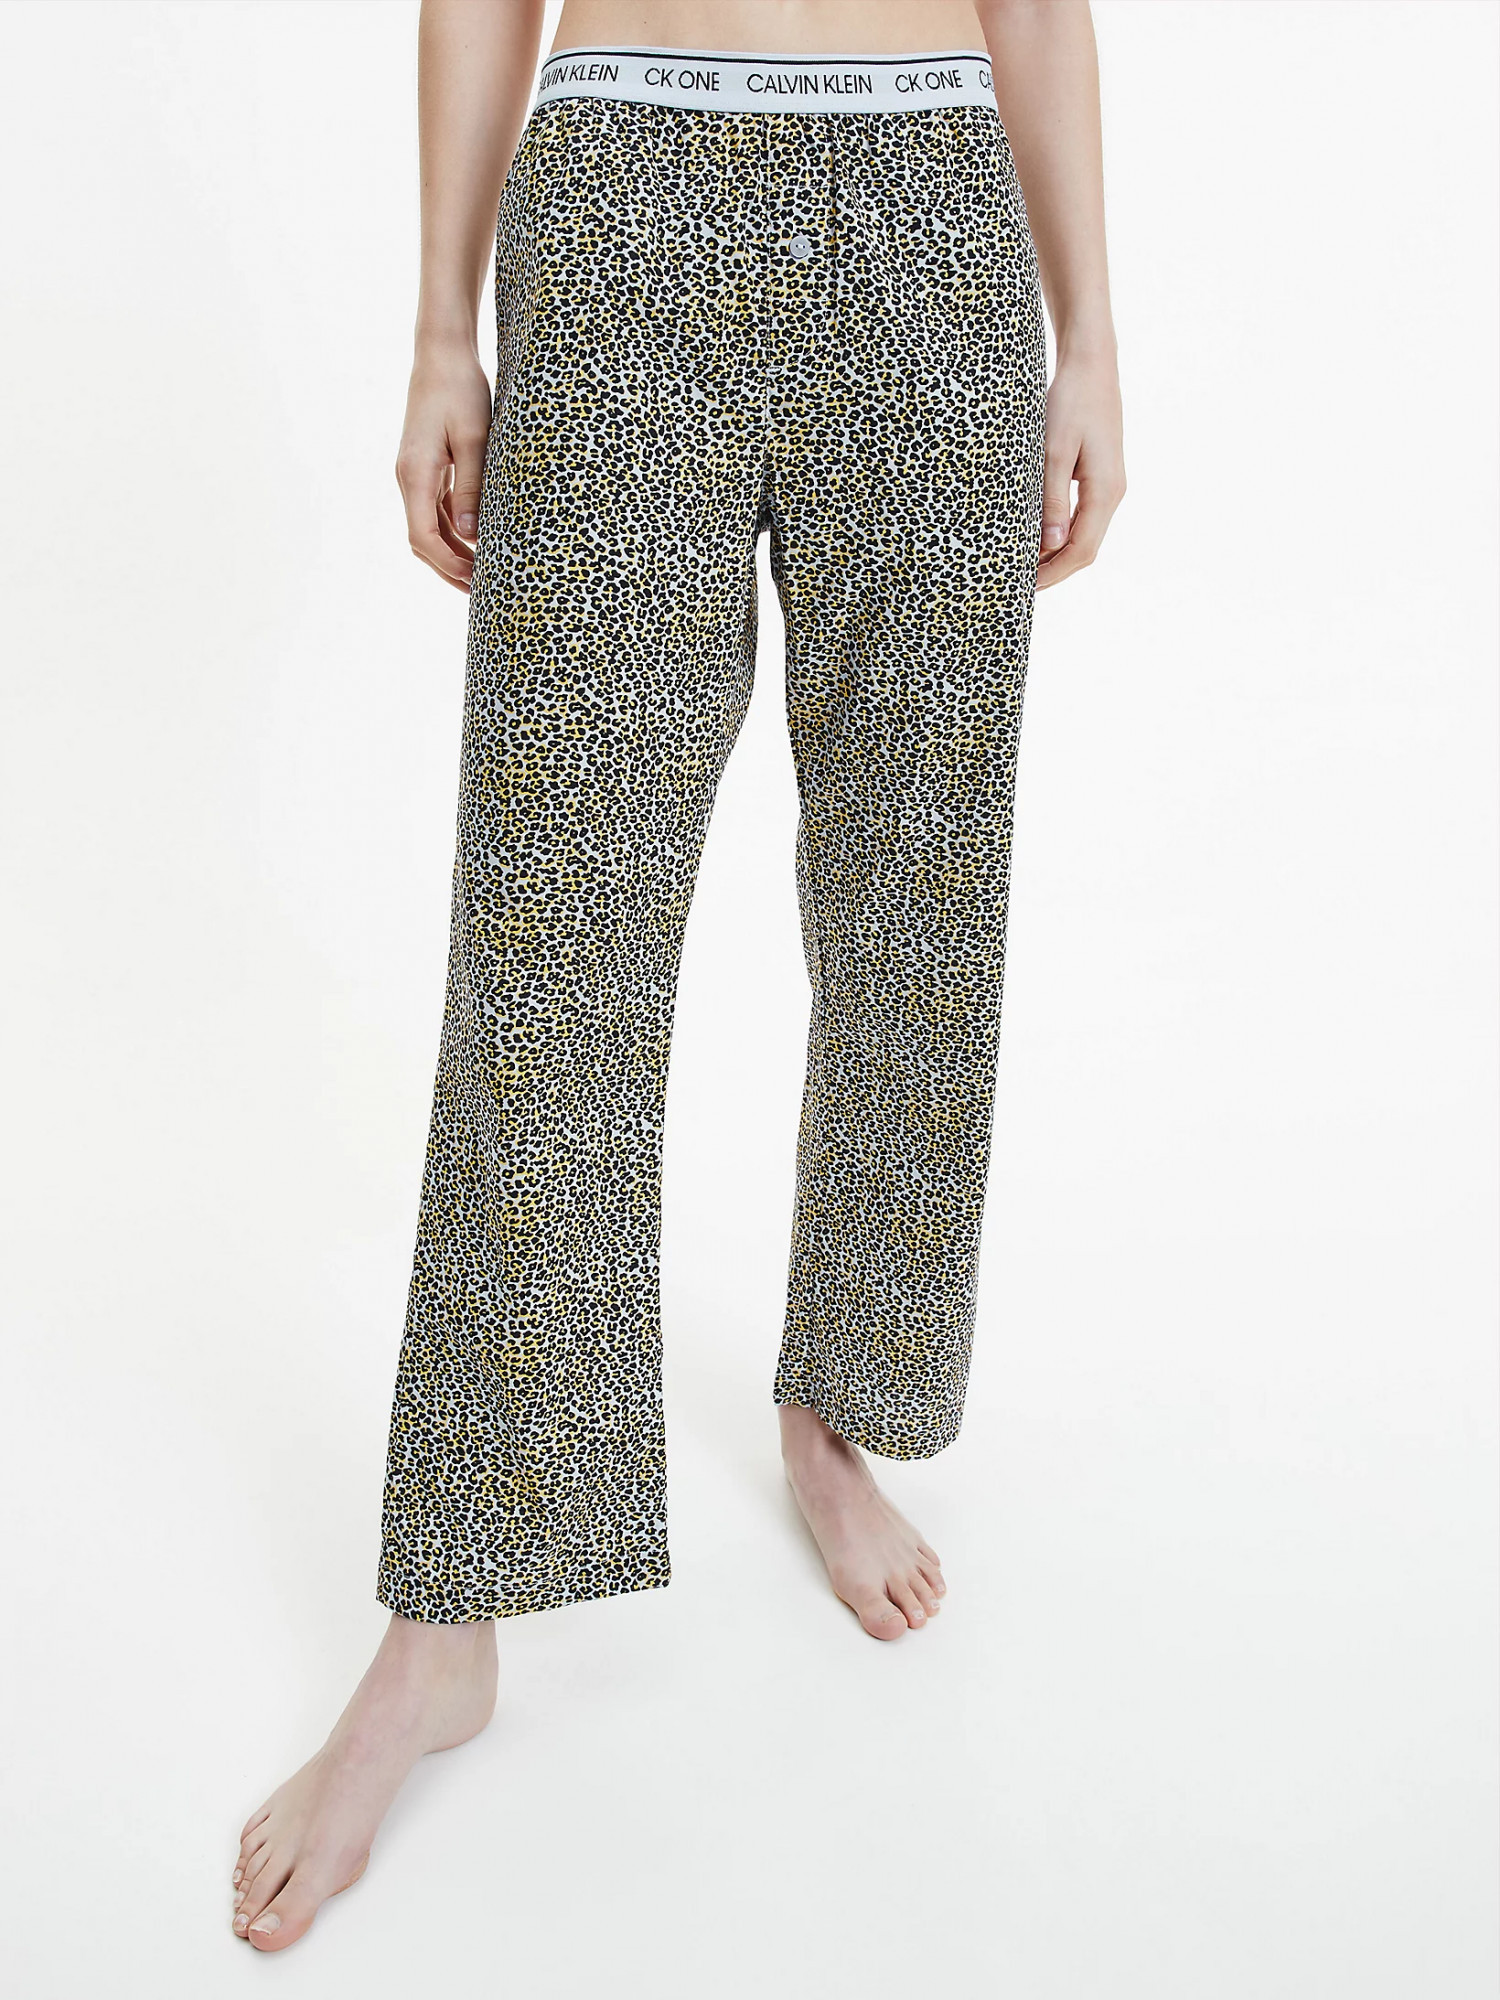 Dámské pyžamové kalhoty QS6433E - V4L Fialová se zvířecím vzorem - Calvin Klein M